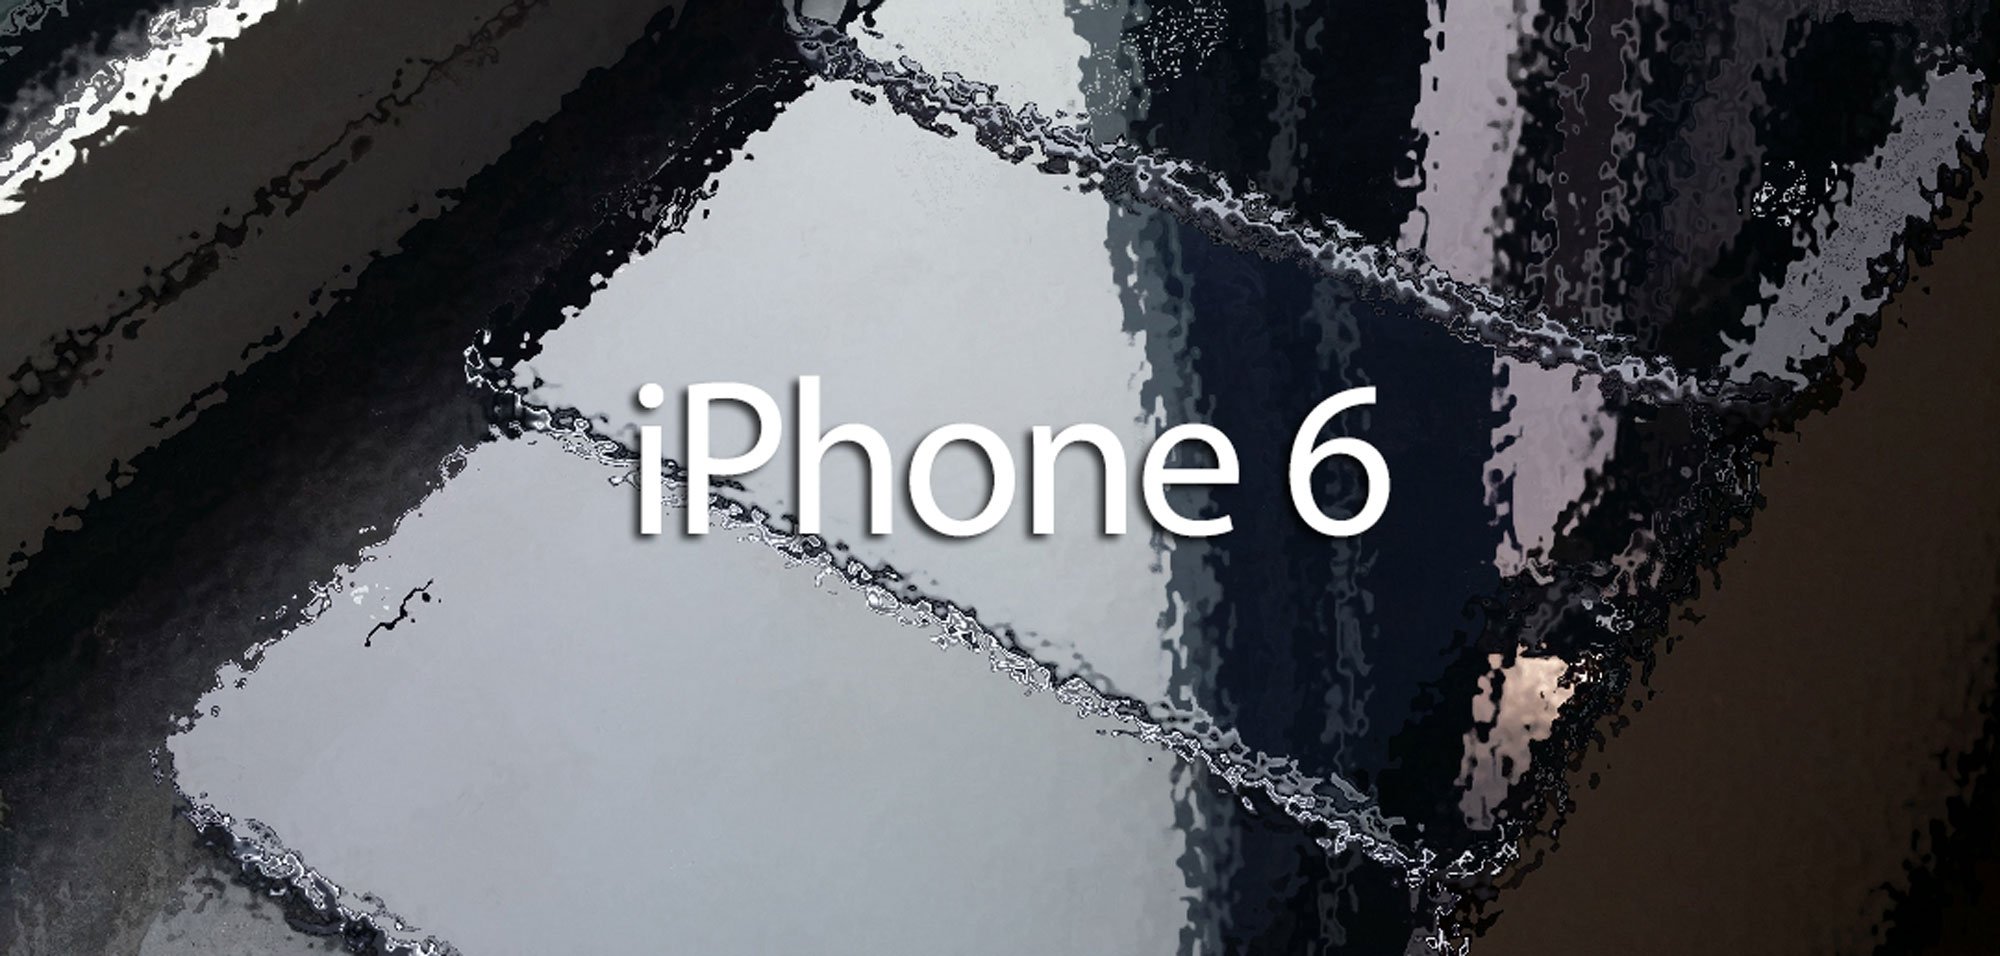 iPhone 6: Apple will alle Rekorde brechen! 1